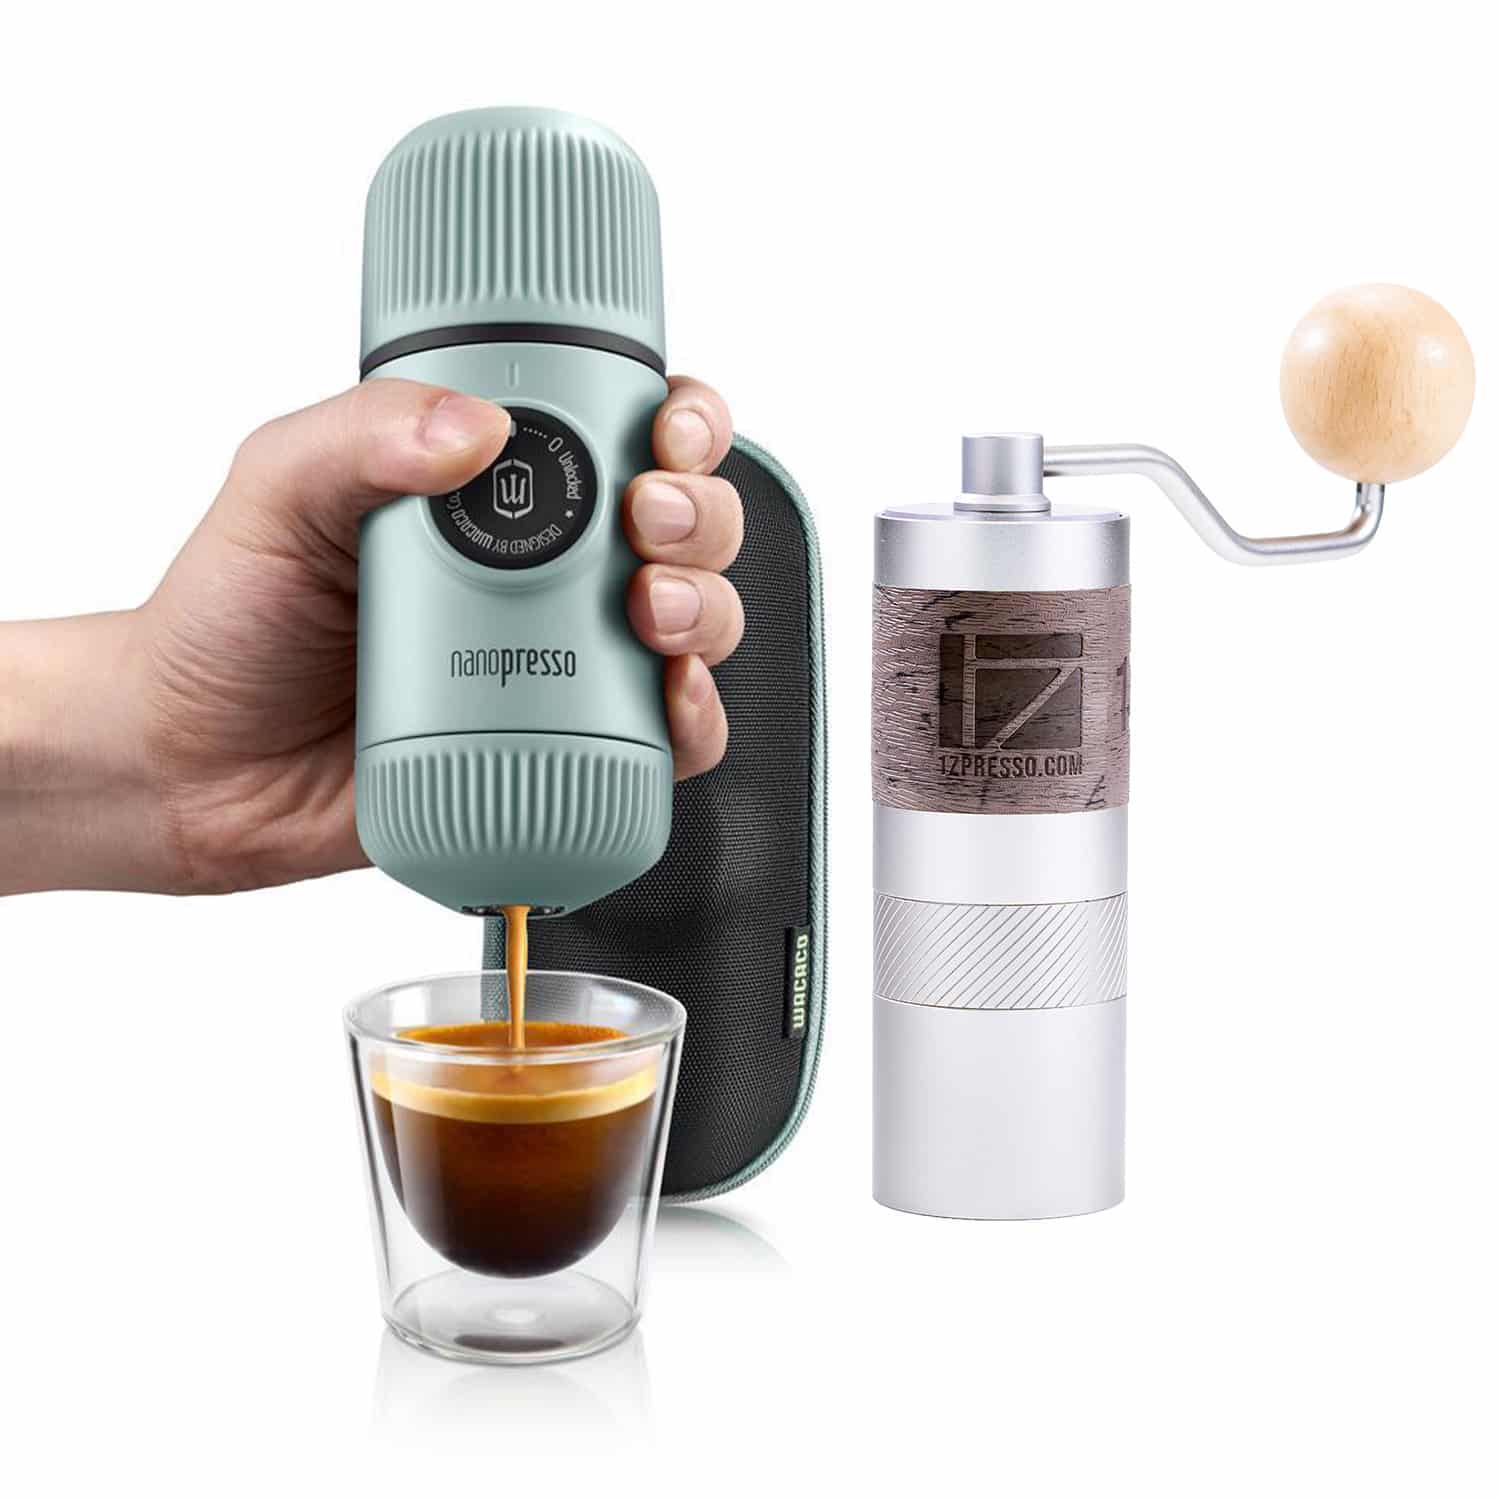 Bộ dụng cụ pha cà phê Wacaco Nanopresso và cối xay 1Zpresso Q2 (White)